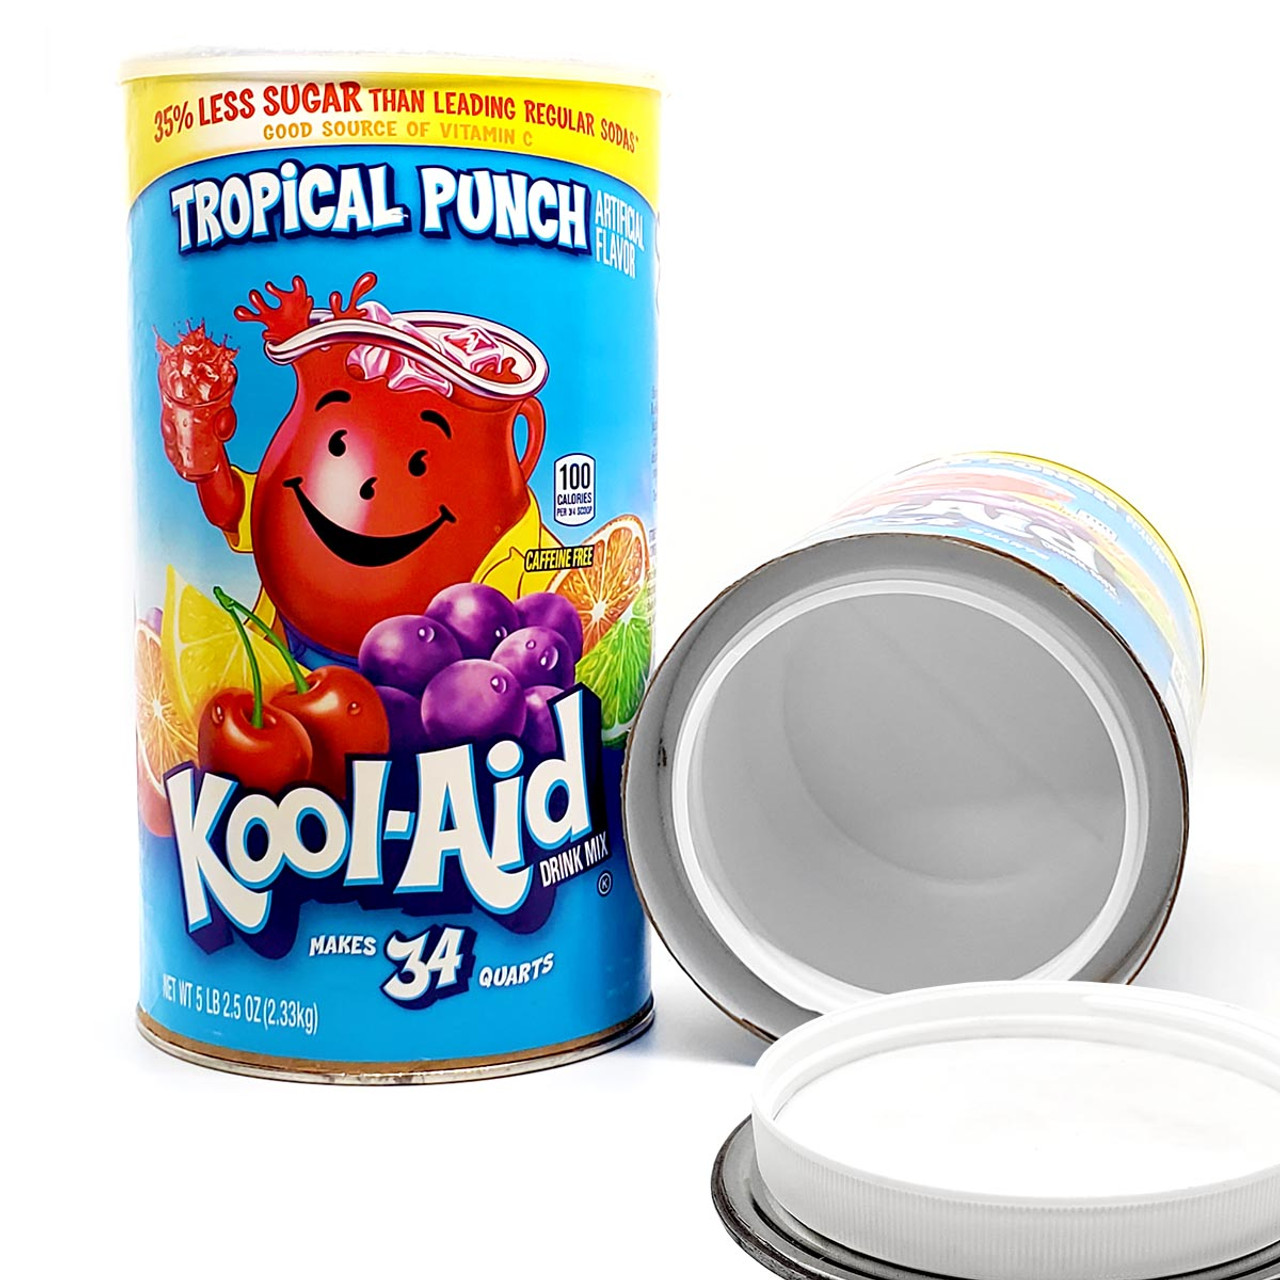 Kool-Aid Tropical Punch, 34 qt.